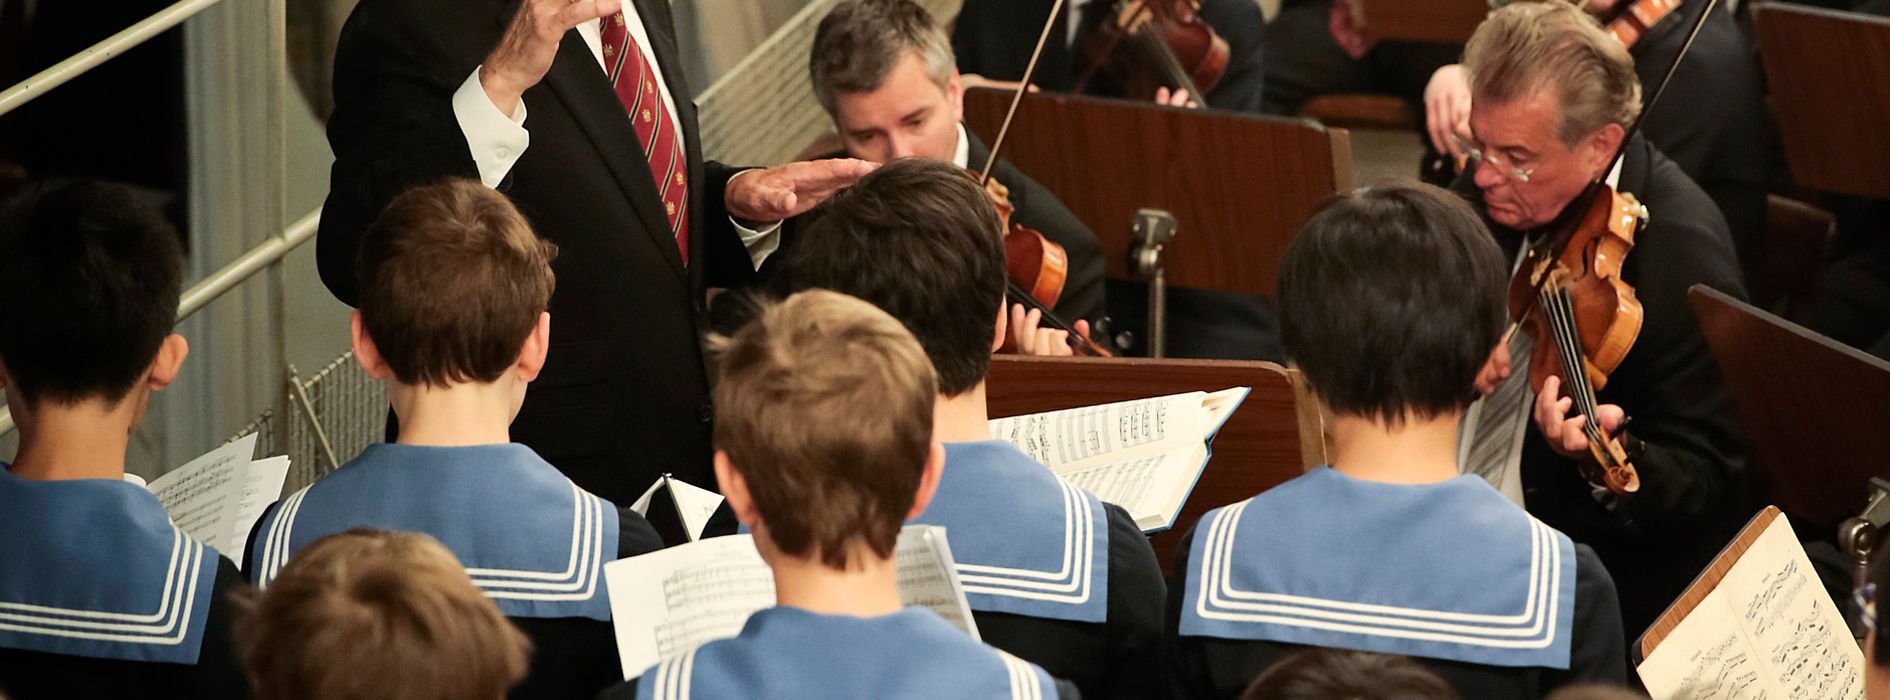 Concert susţinut de Corul de Băieţi din Viena, într-o capelă